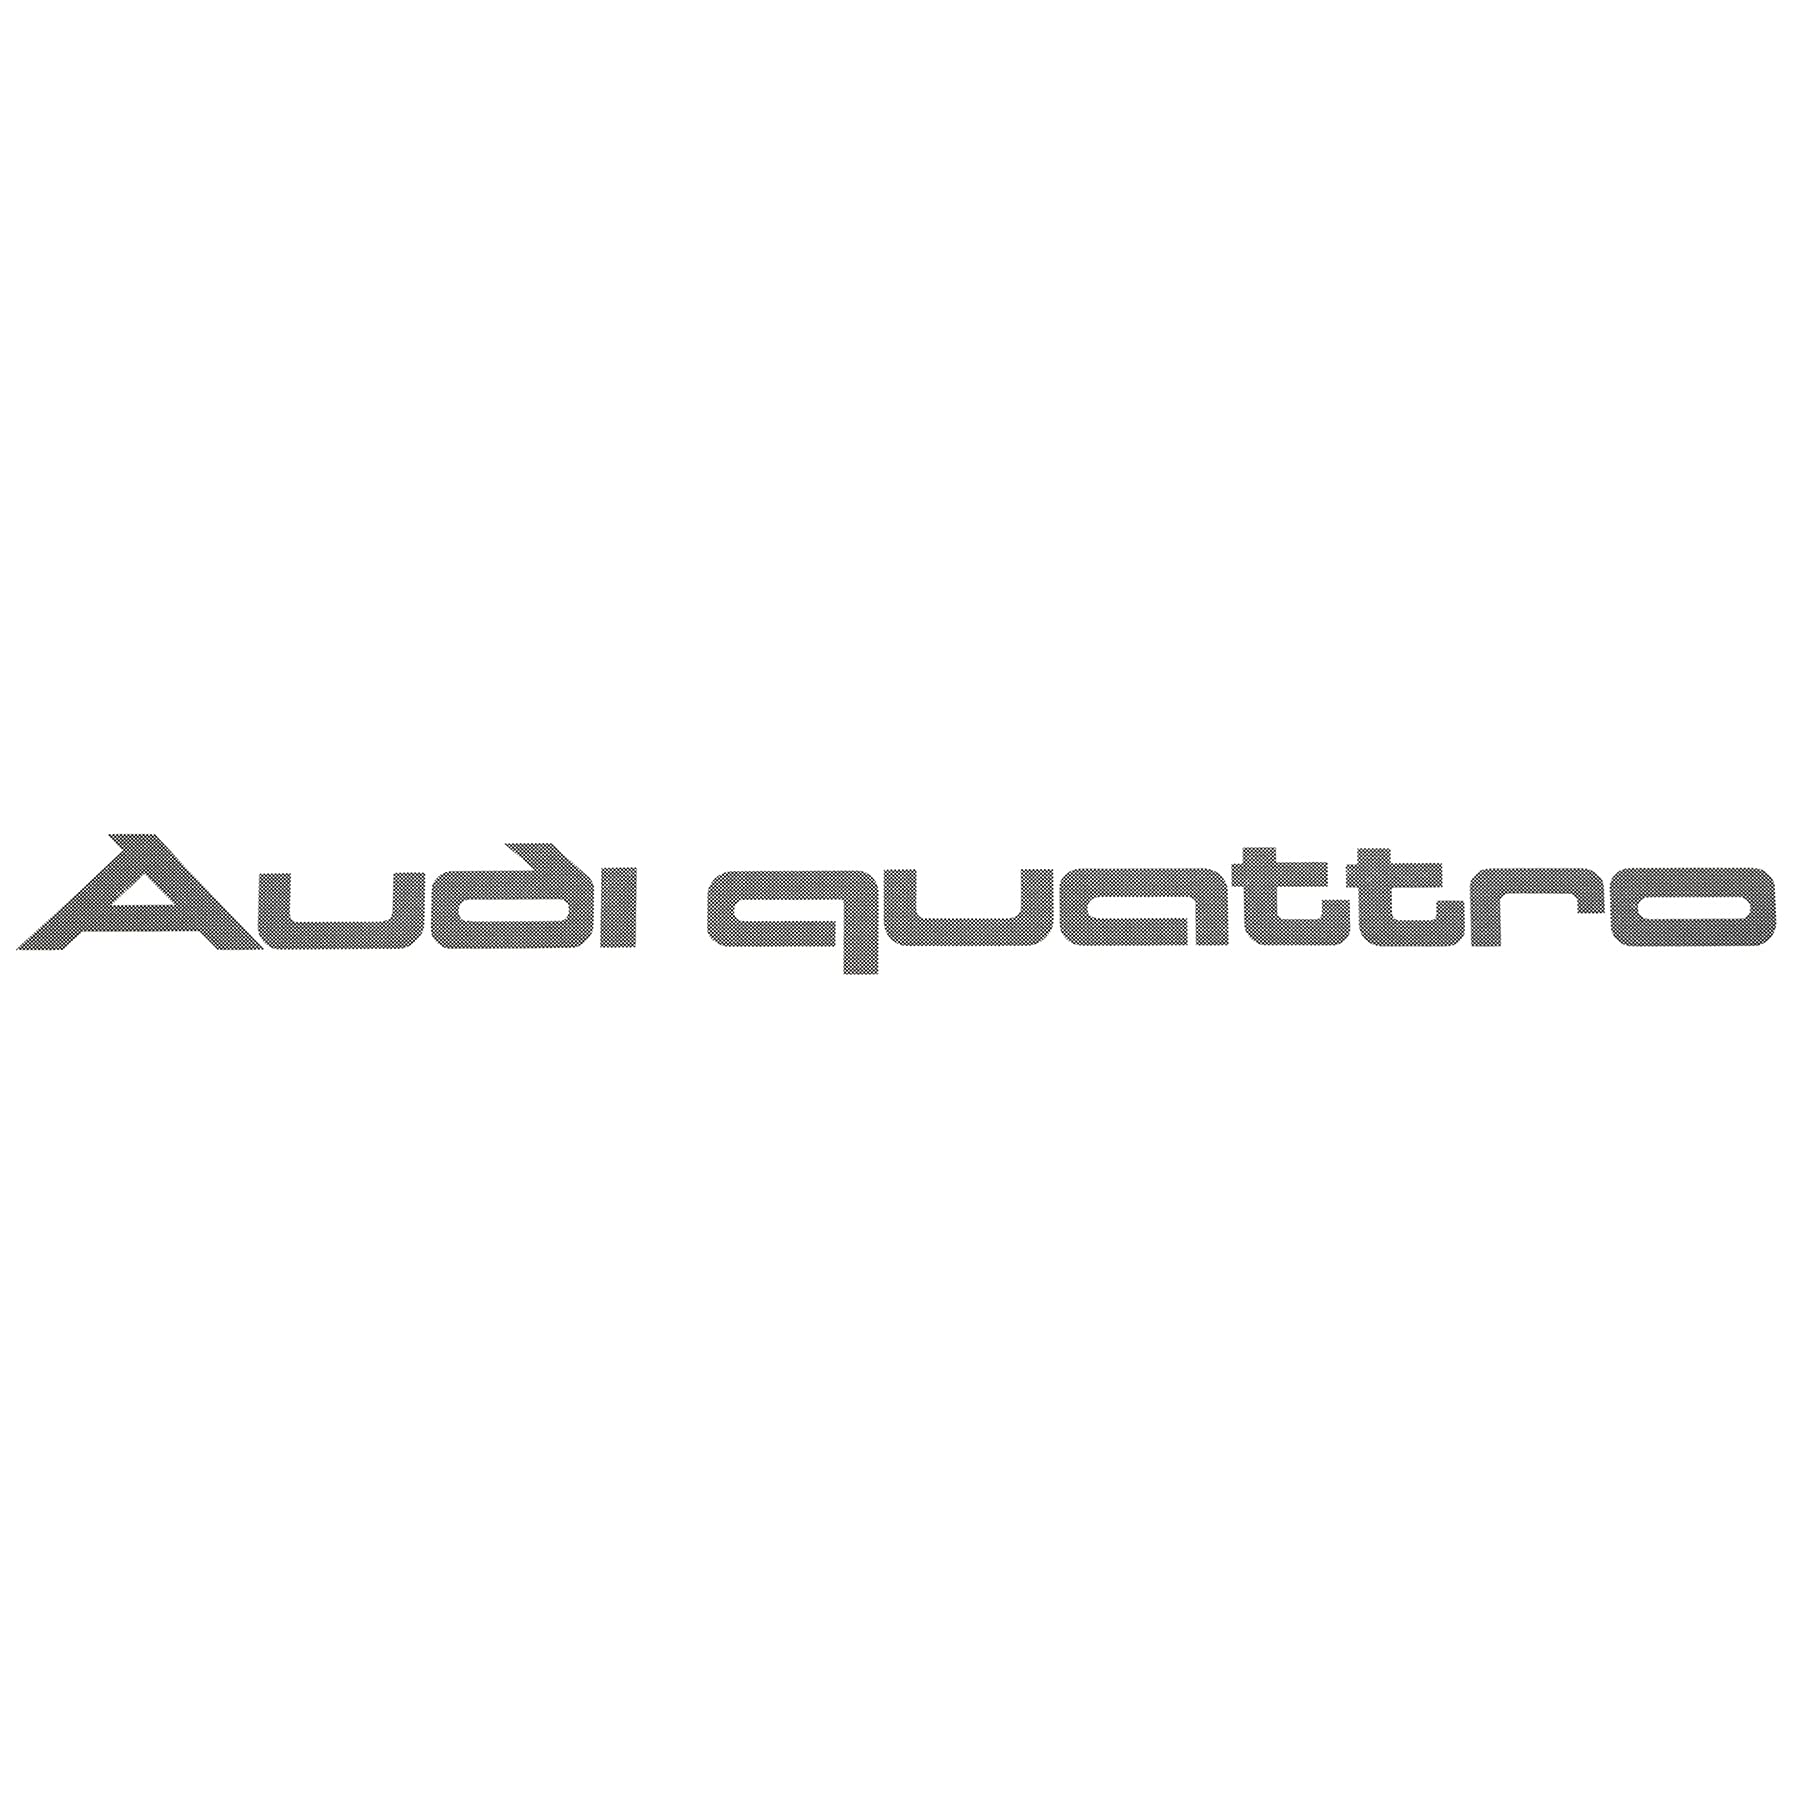 Audi A16-2270 Quattro Logo Schriftzug Dekorfolie gerastert von Audi